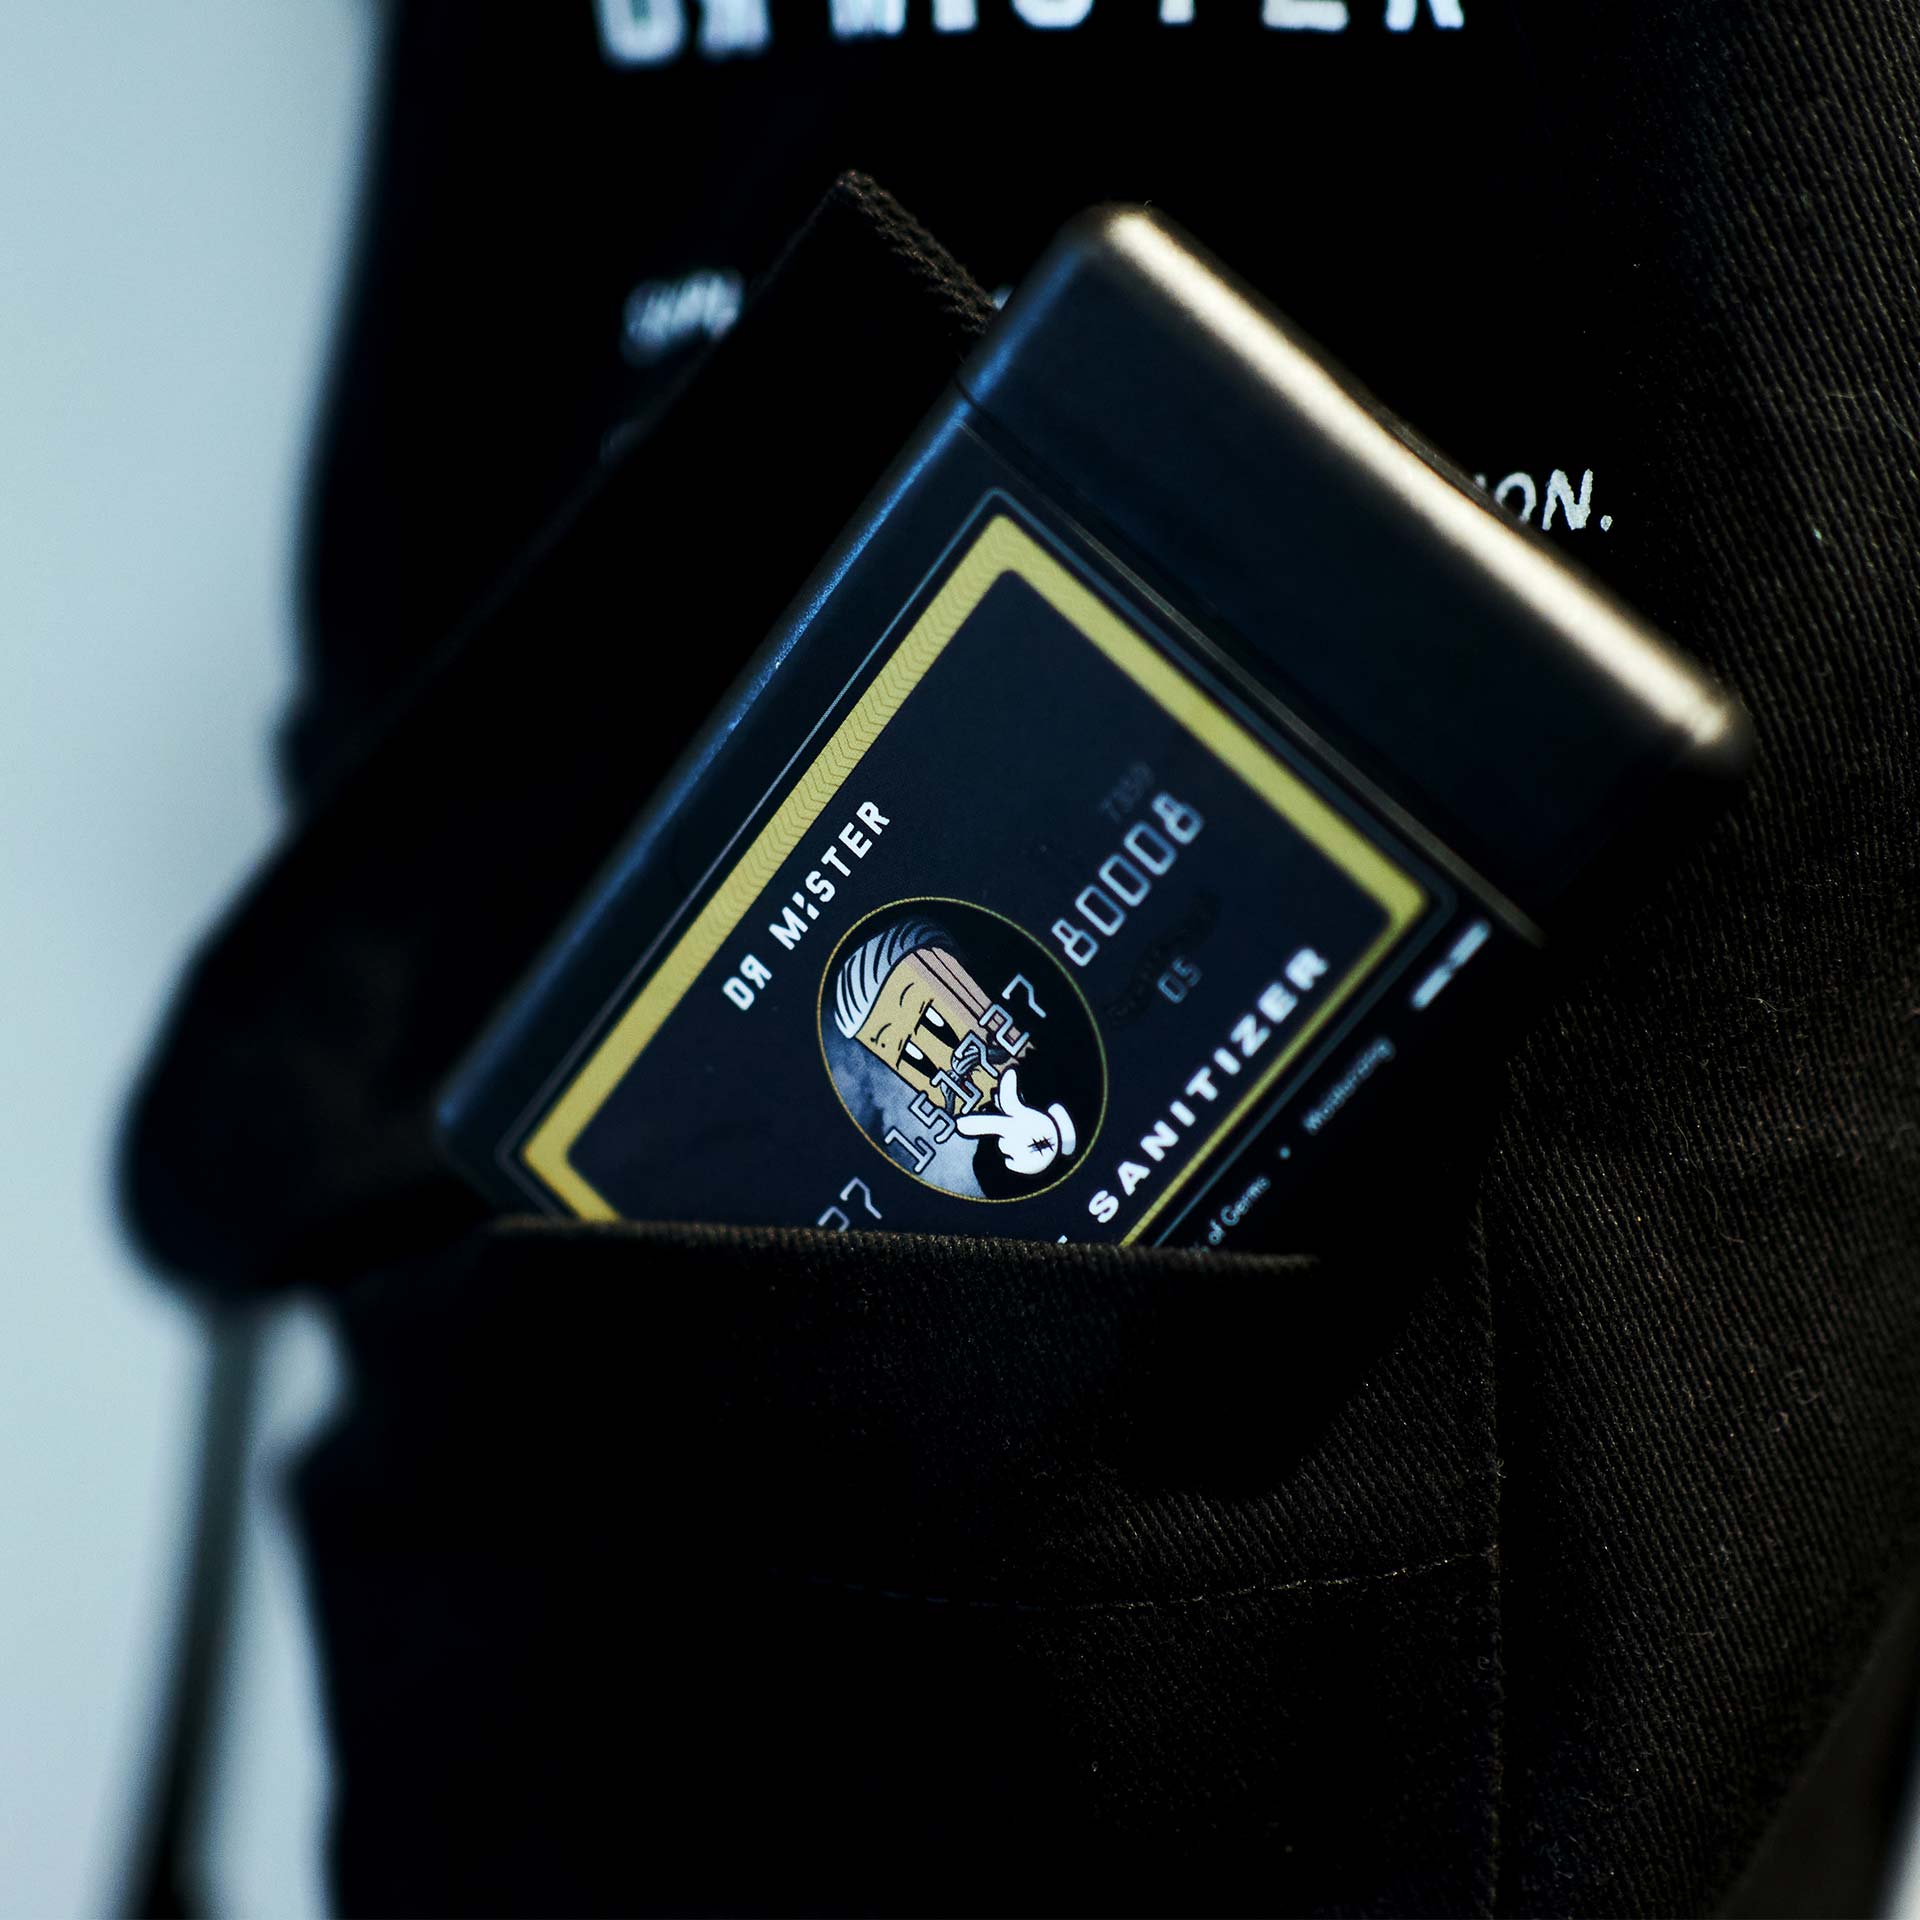 Black Card Pocket Sanitizer